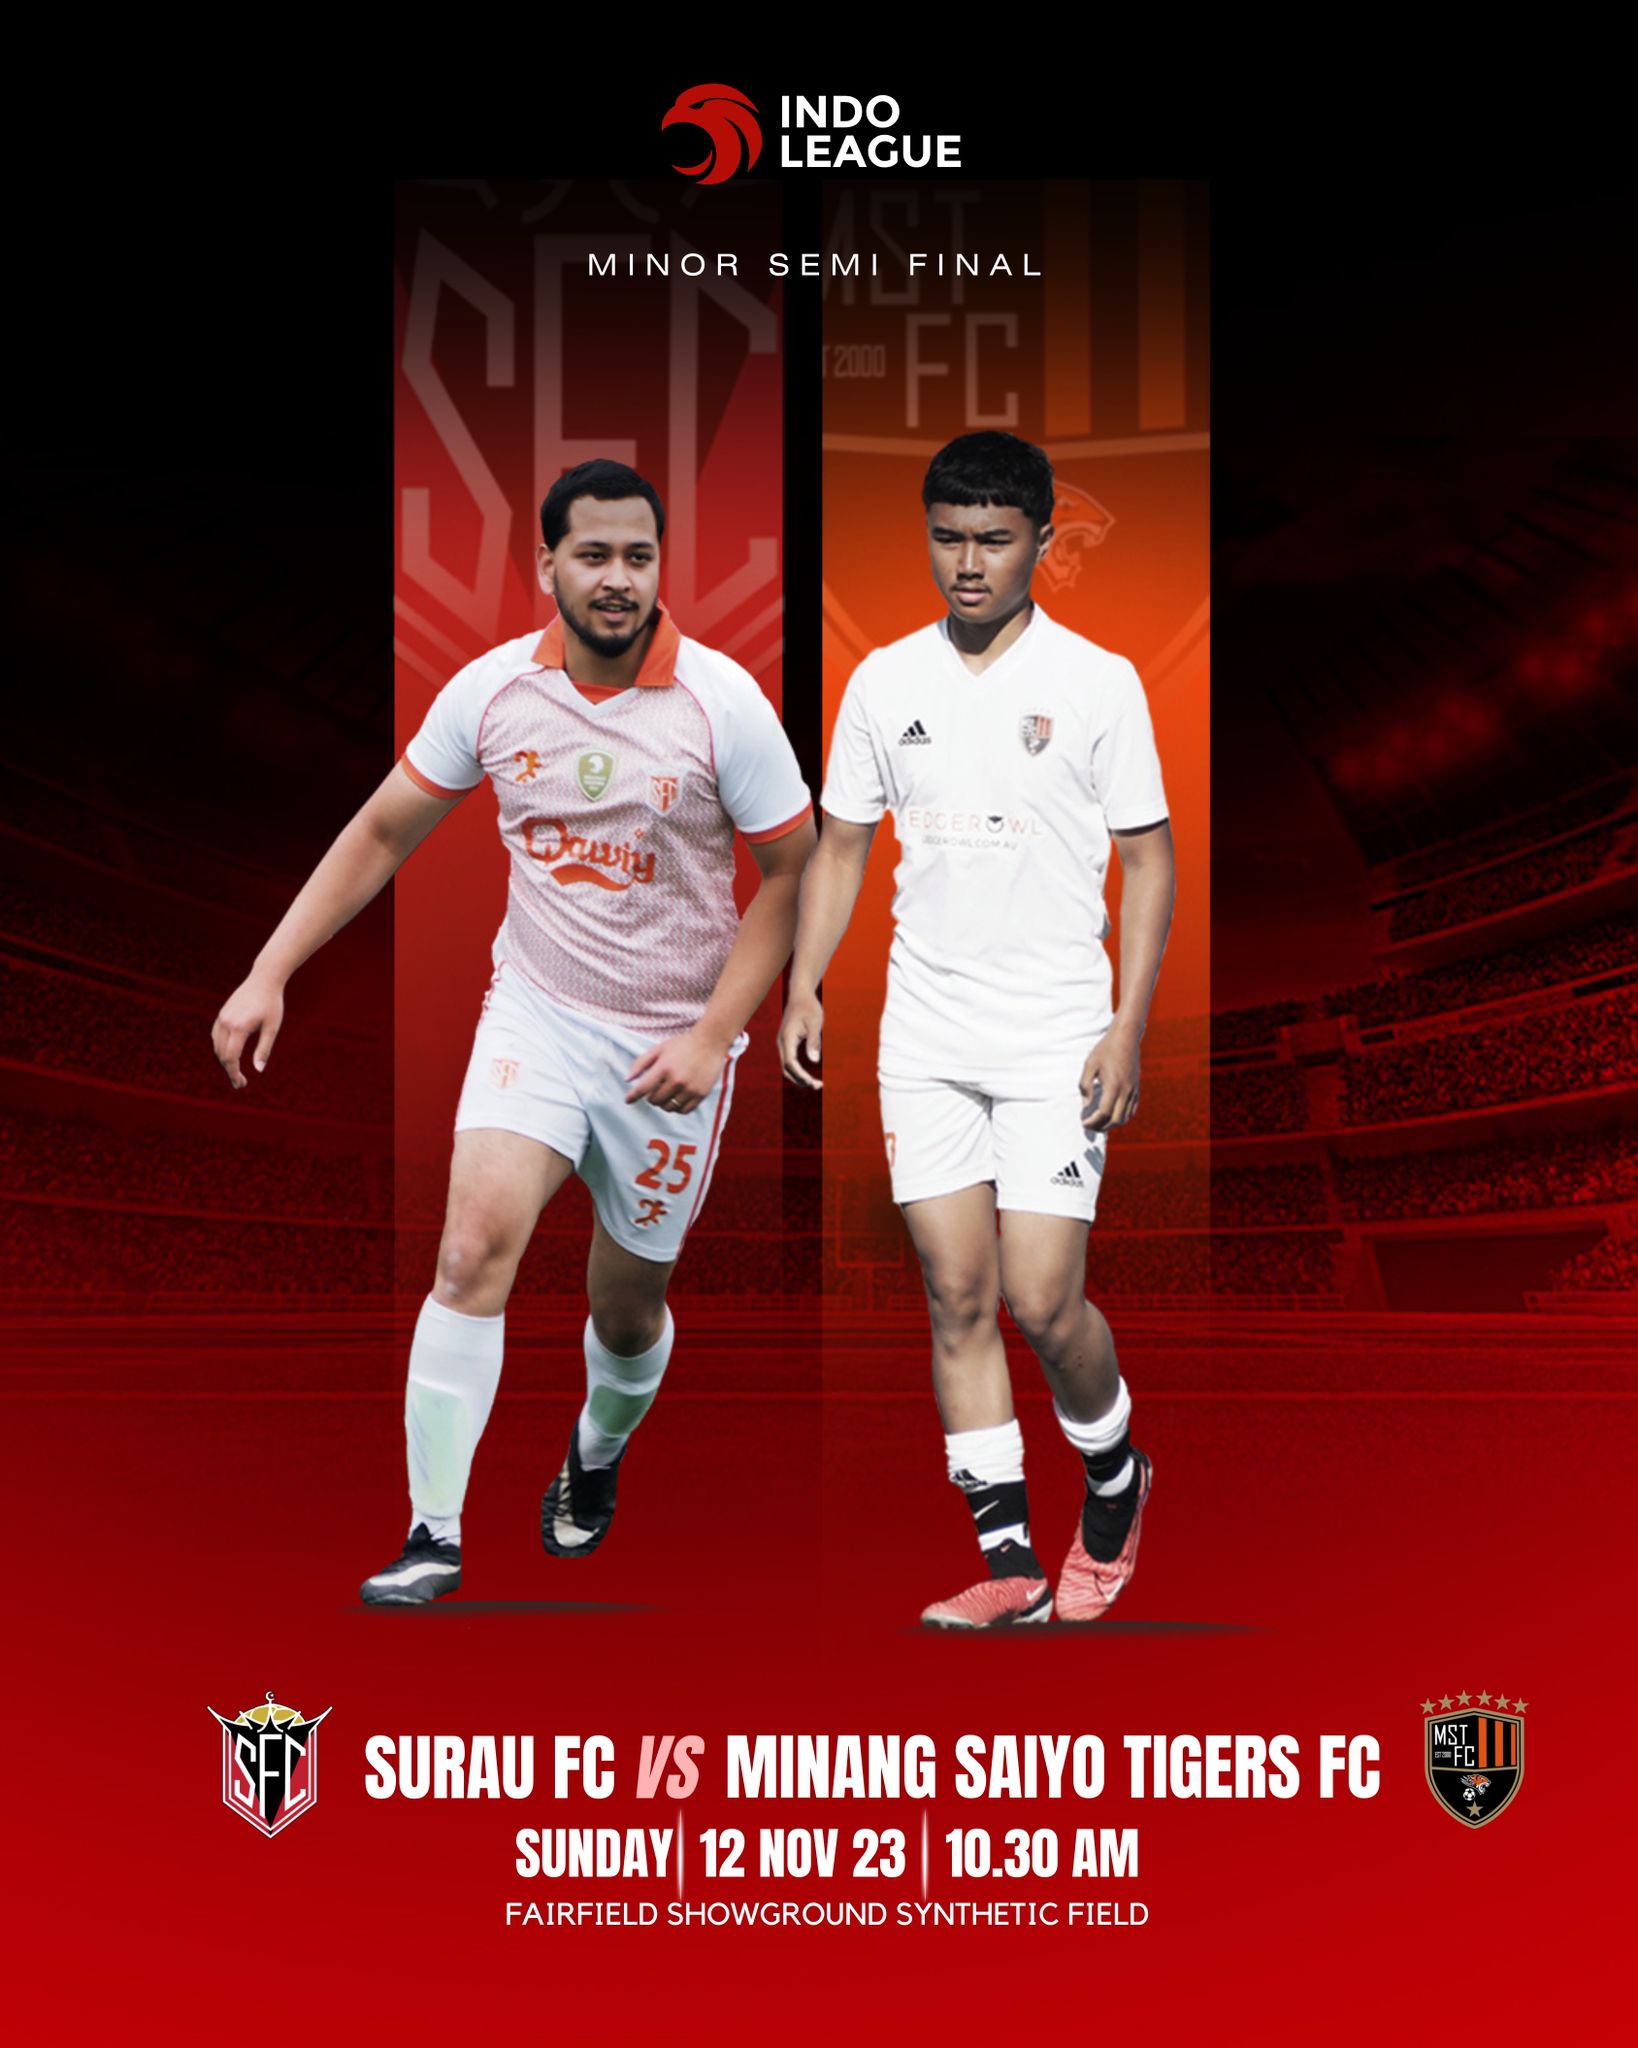 Surau FC vs Minang Saiyo Tigers FC: Minang Derby in the Minor Semi Final